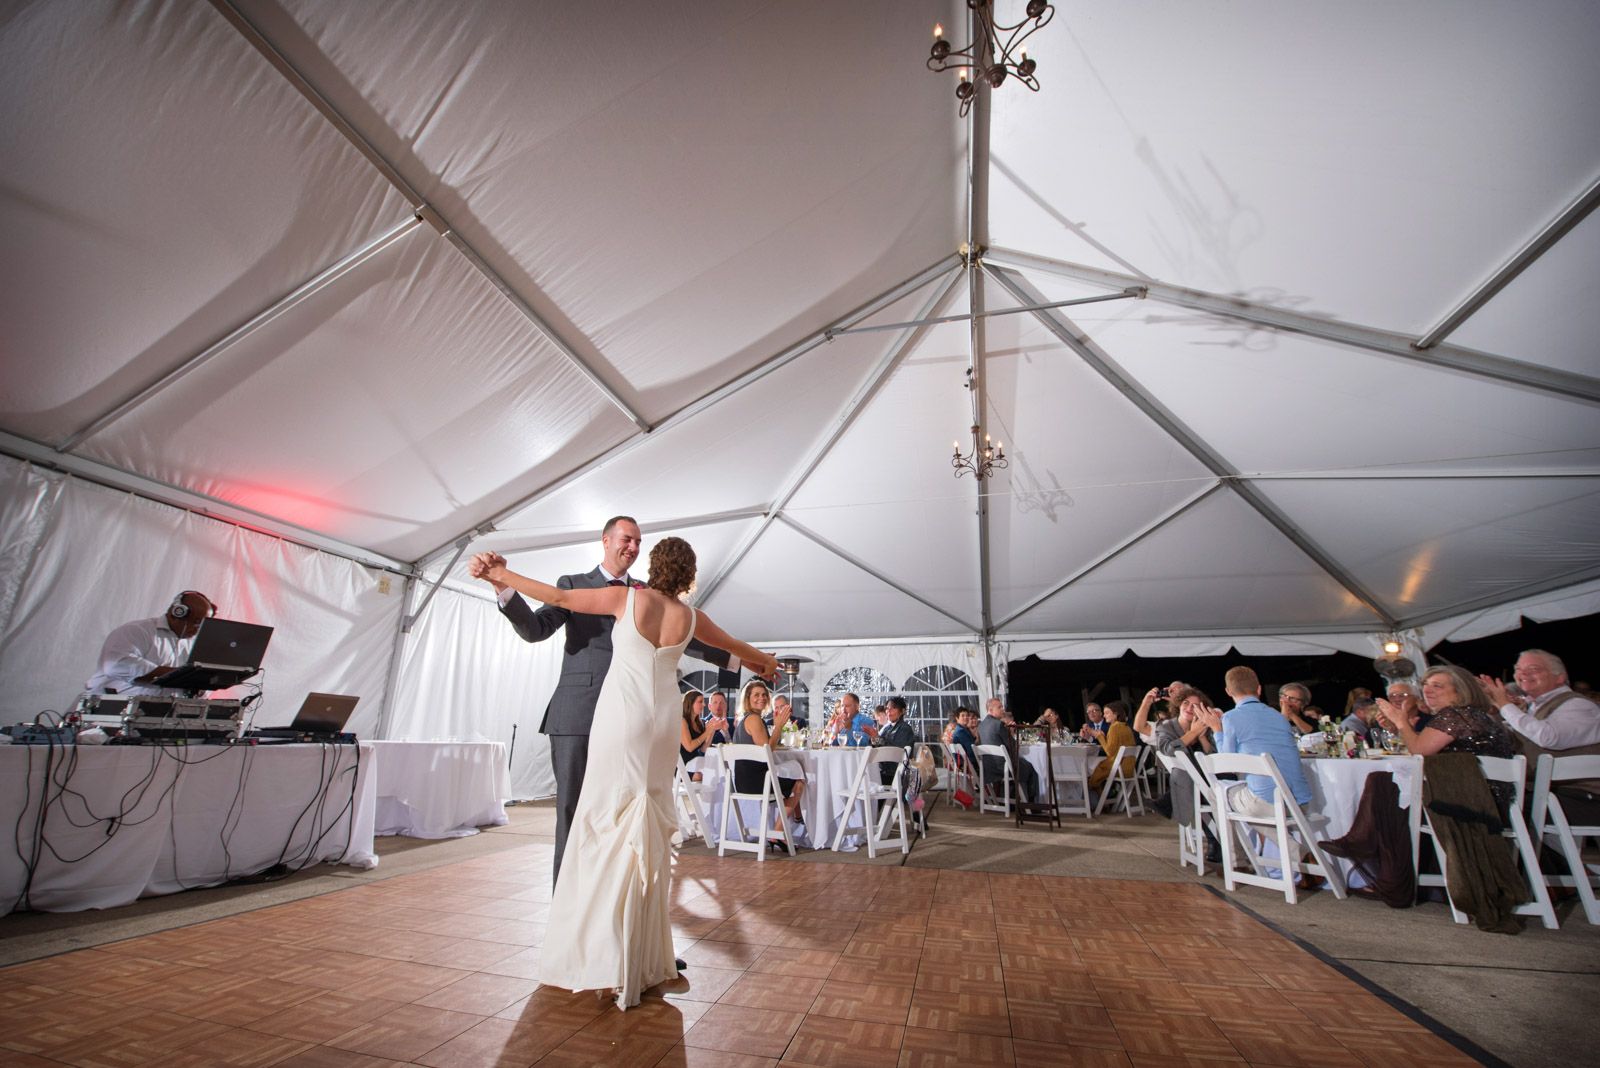 Dance Bride Groom Tent Wedding Eagle Ridge Resort